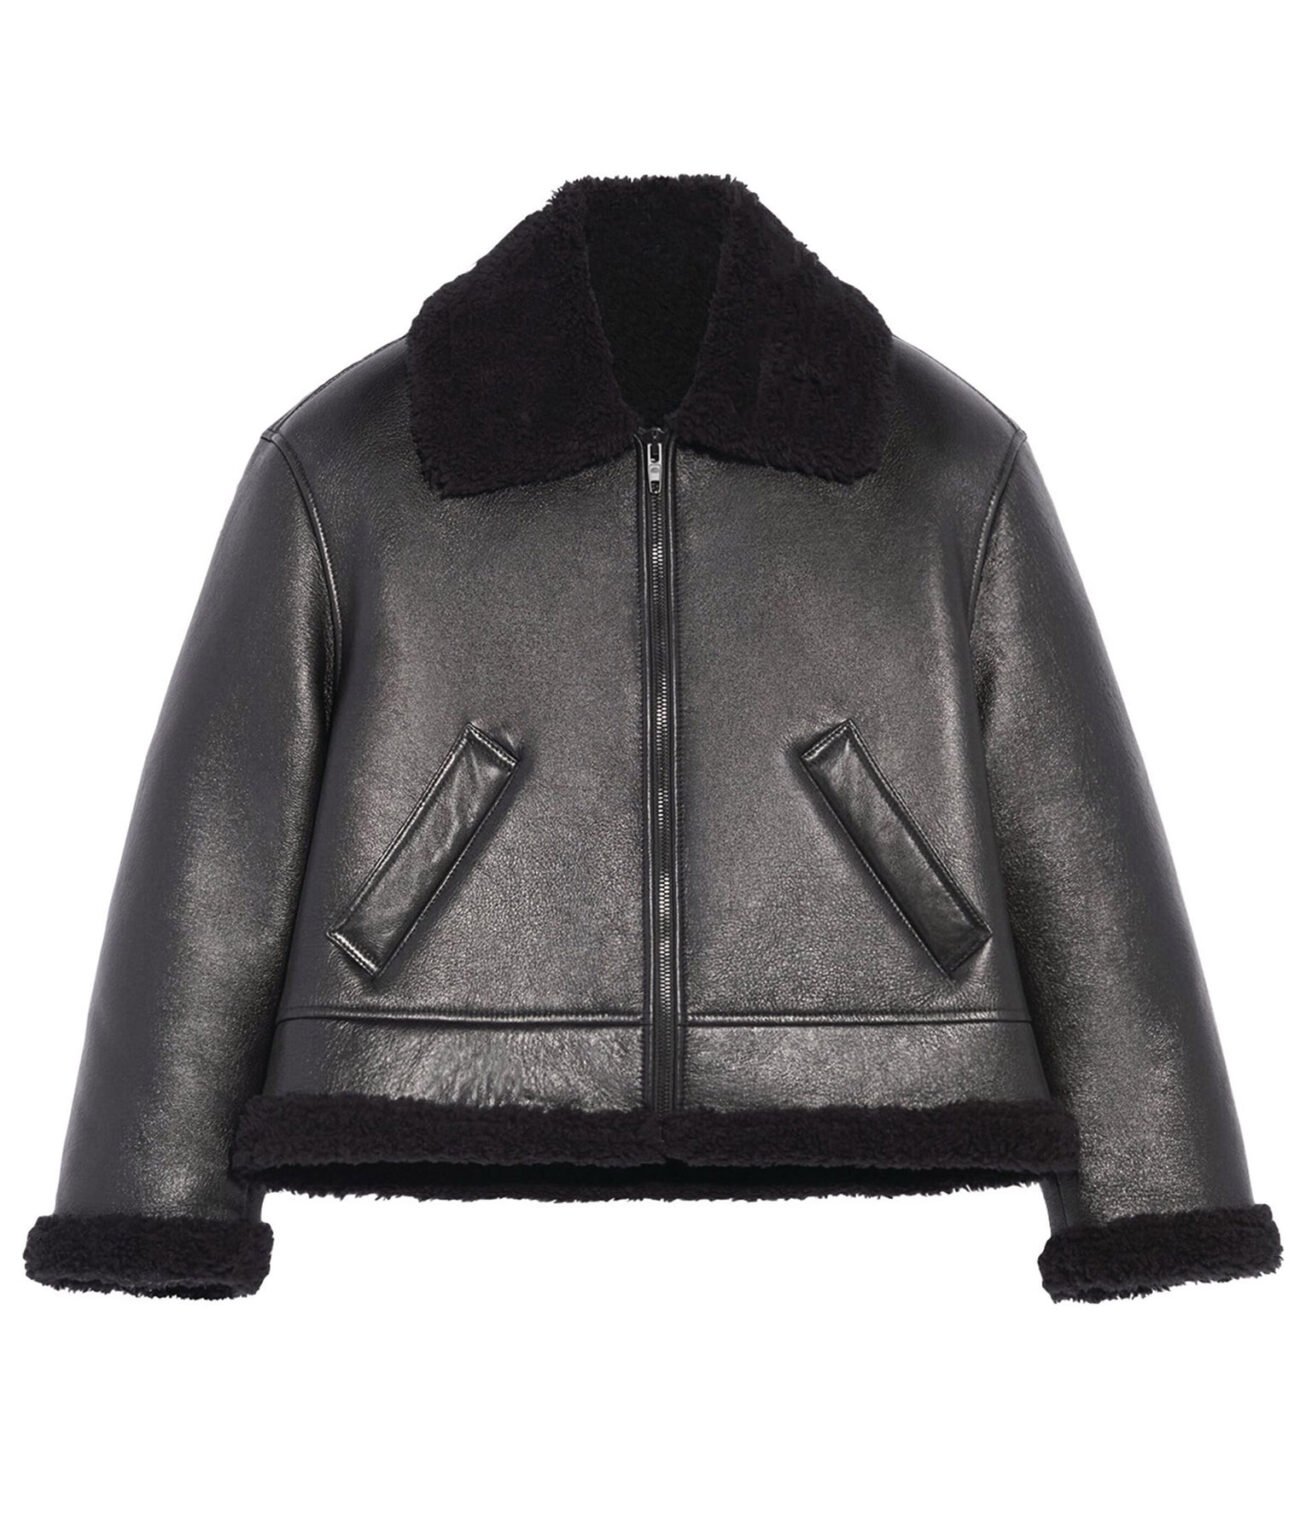 Bad Bunny Shearling Leather Jacket - Nyc Leather City-Shop Stylish ...